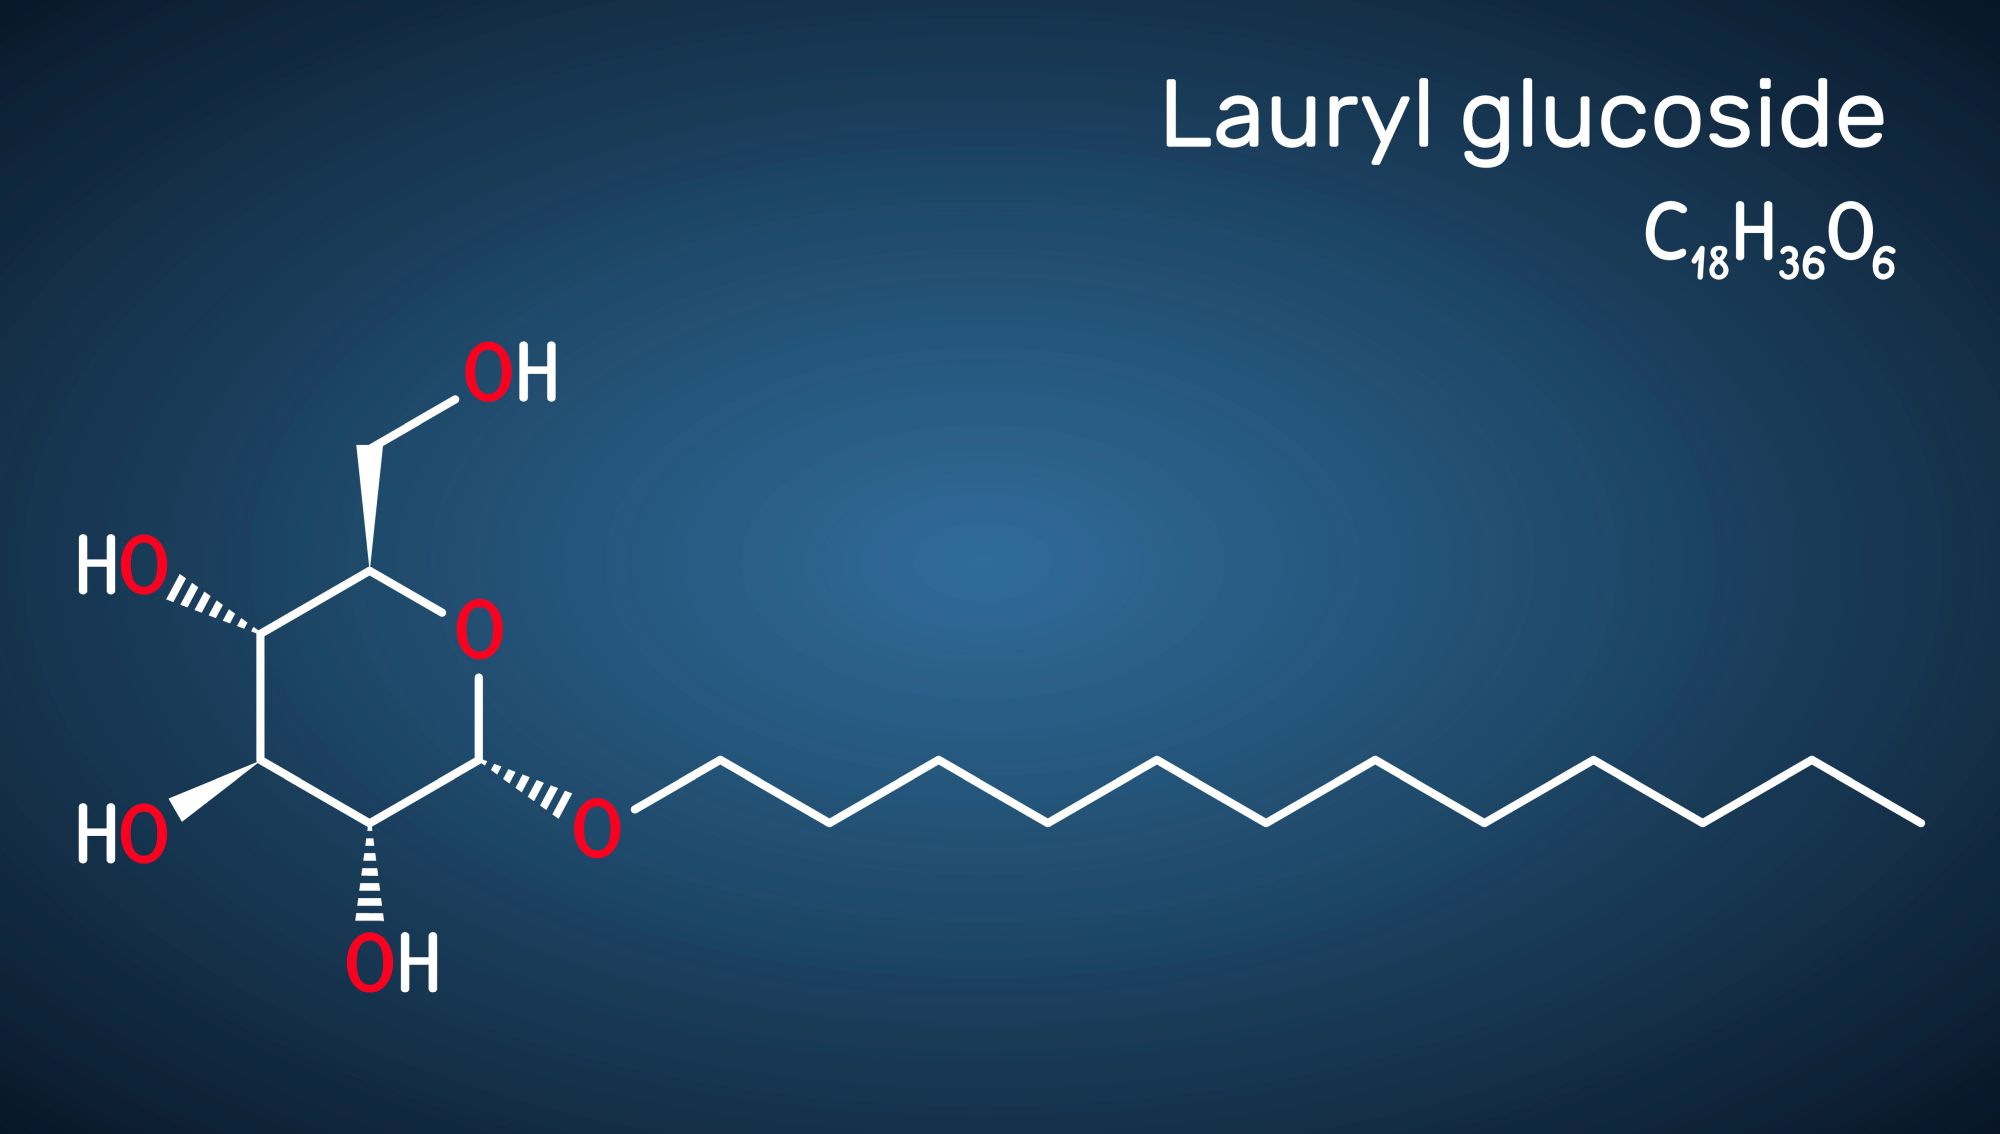 wzór chemiczny lauryl glucoside